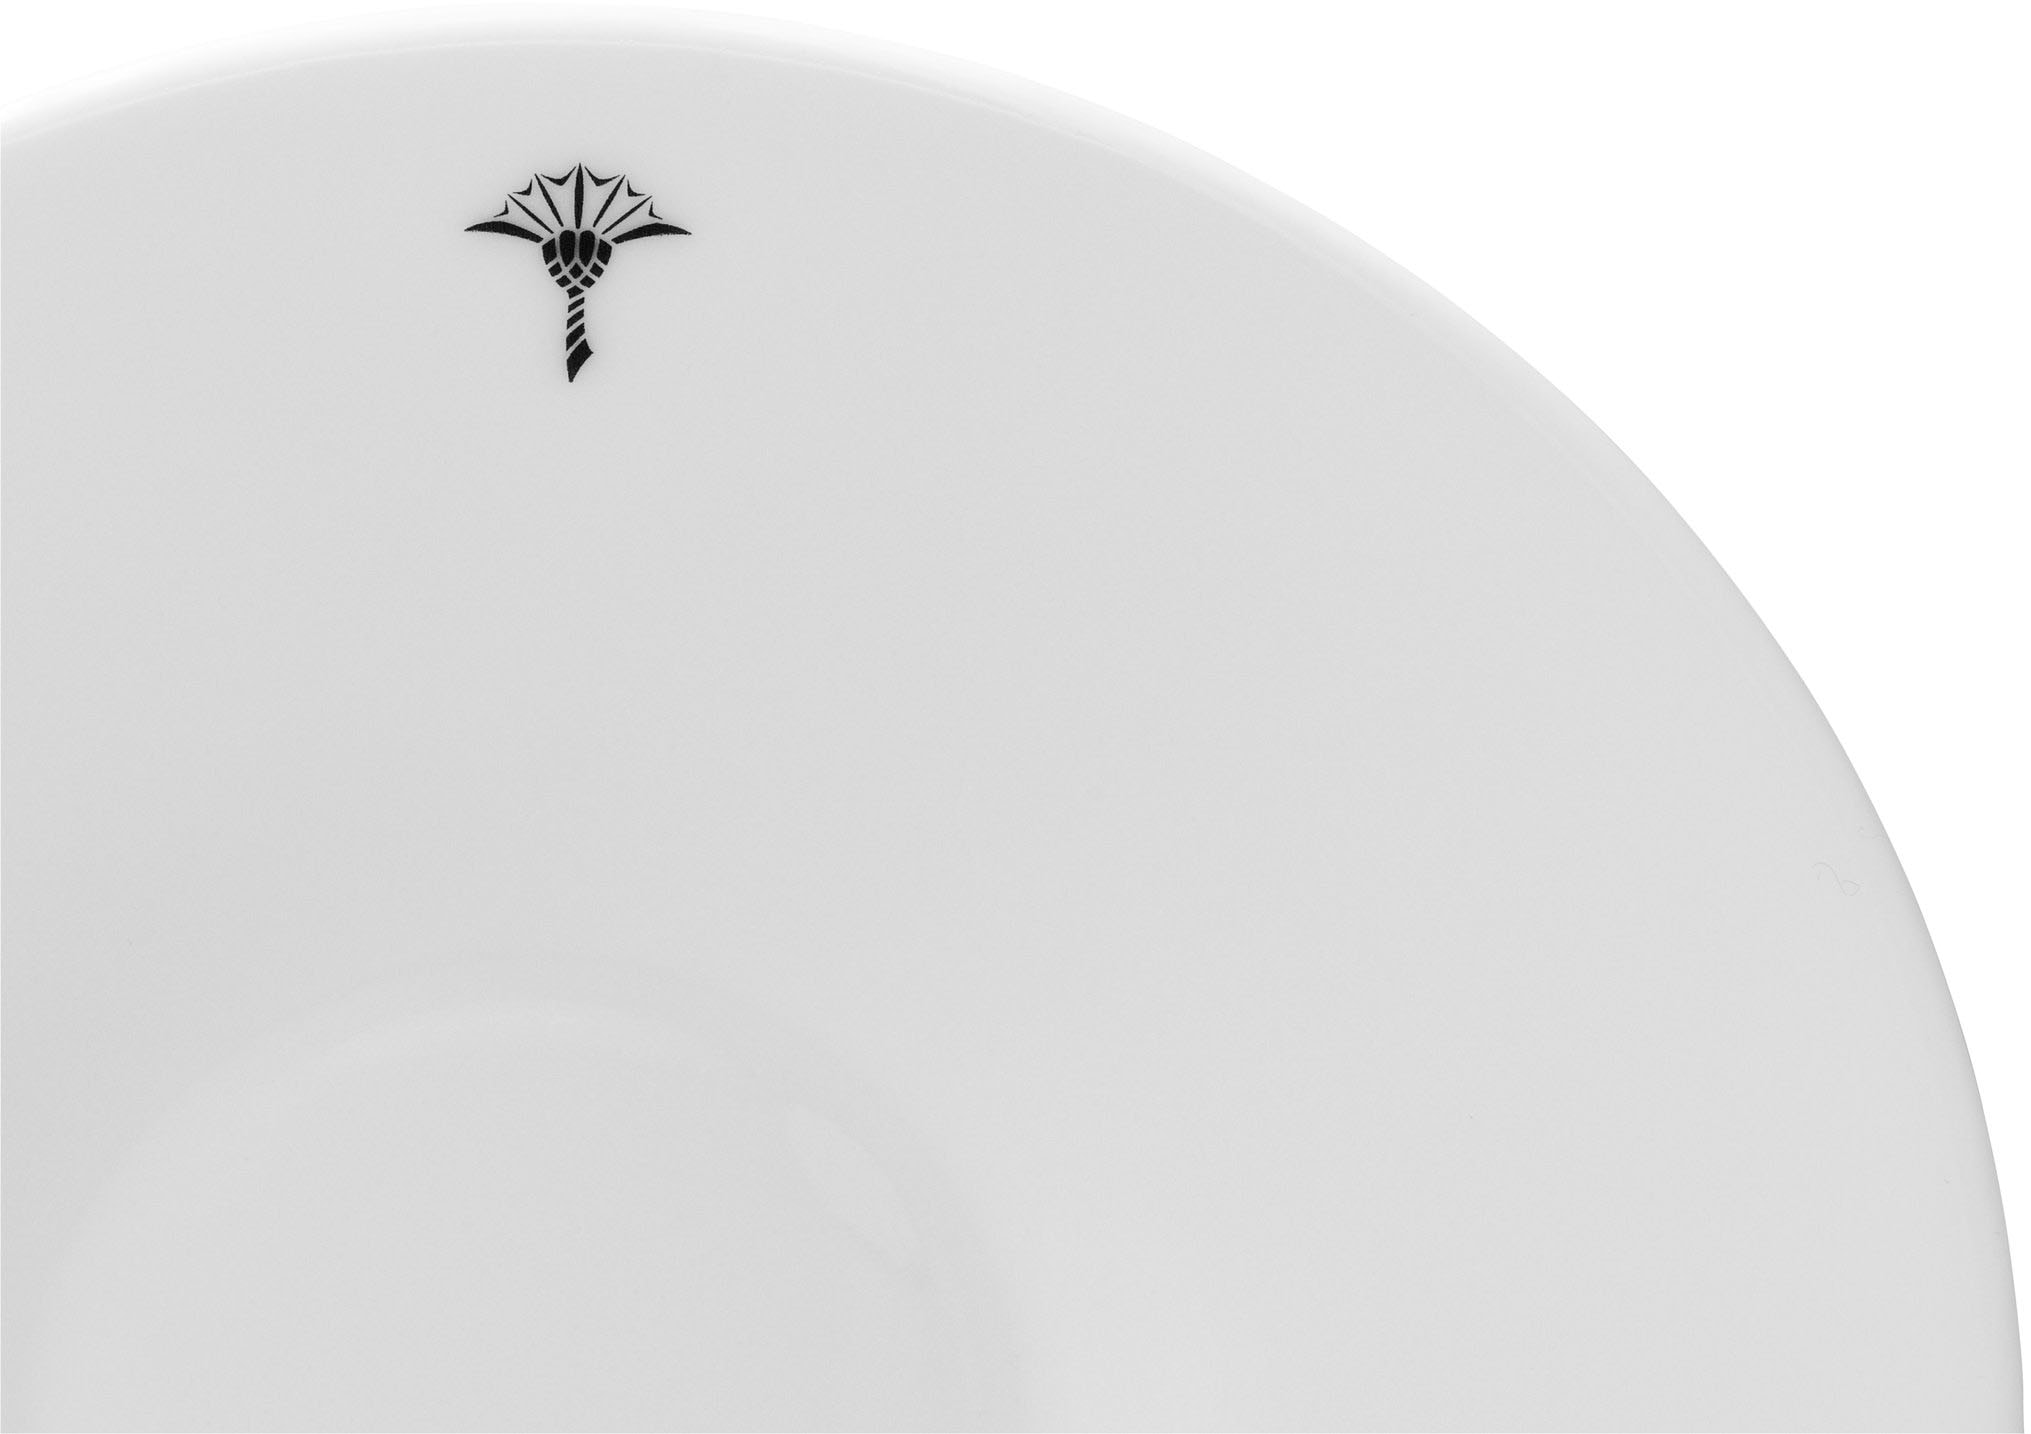 JOOP! Untertasse »JOOP! SINGLE CORNFLOWER«, (Set, 2 St.), hochwertiges Porzellan mit einzelner Kornblume als Dekor, Ø 15,5 cm